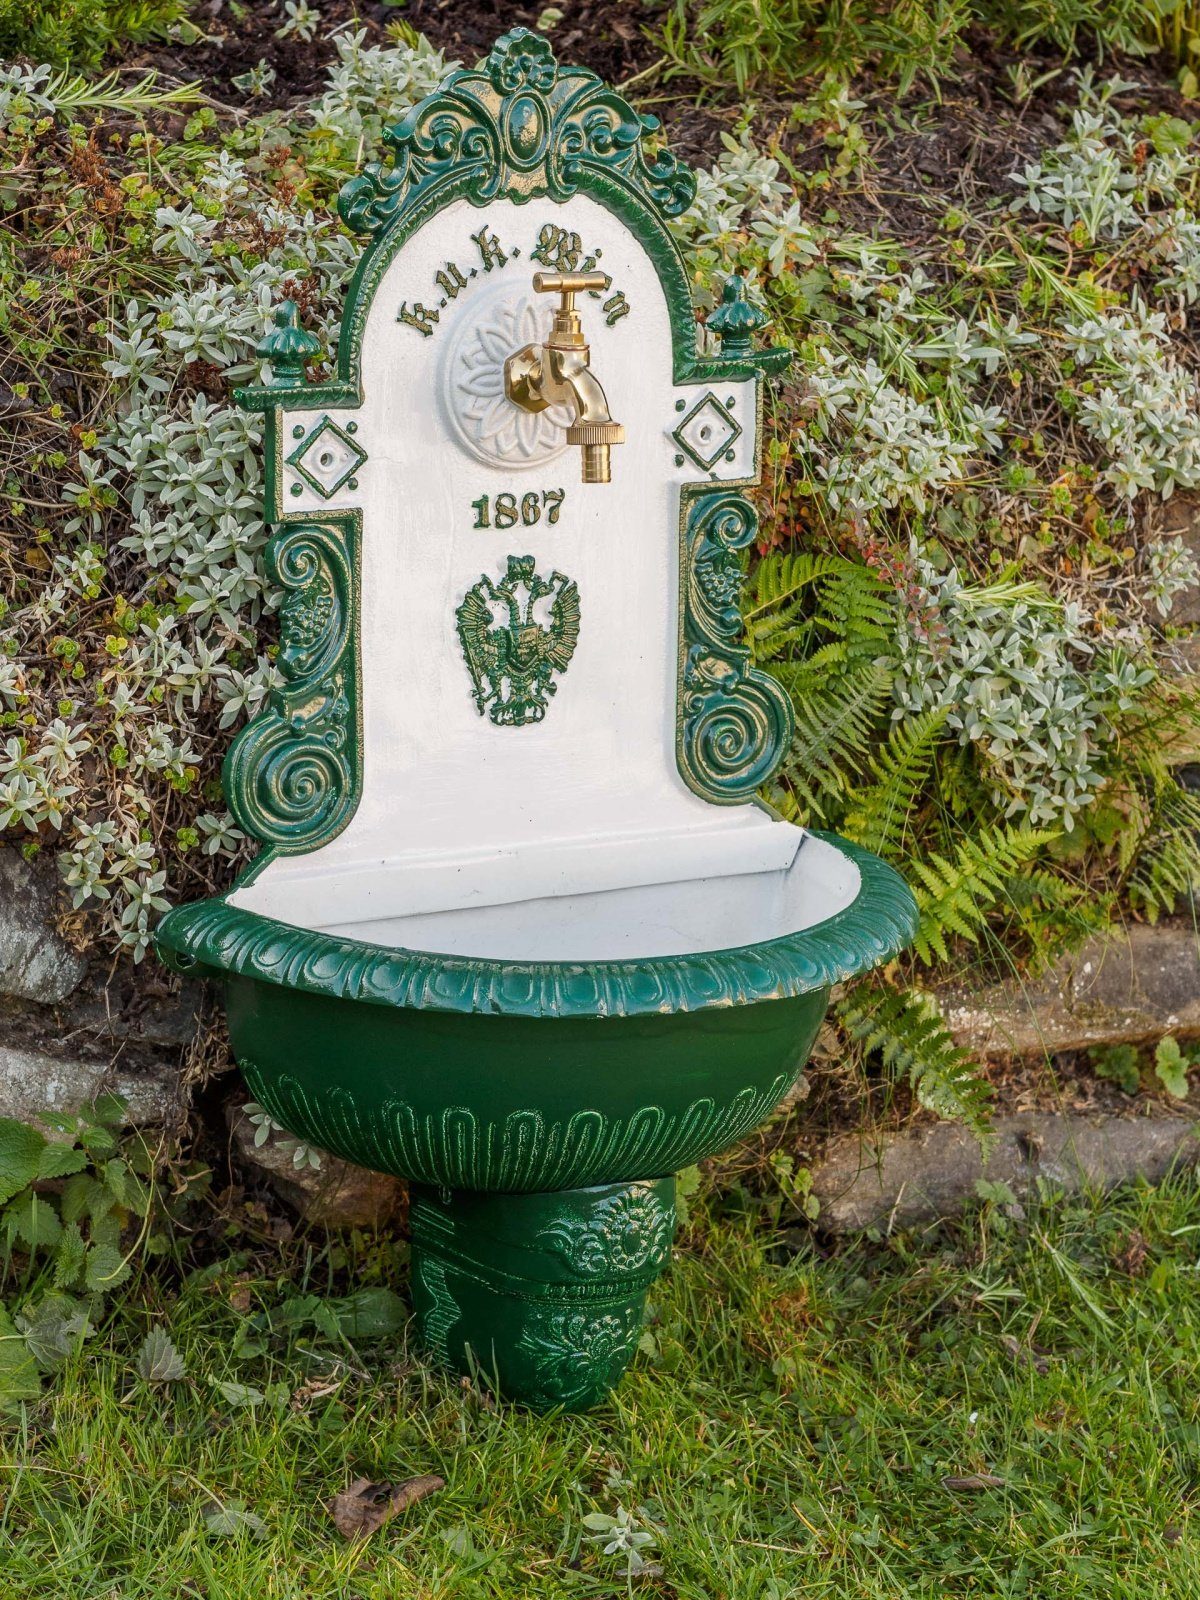 Aubaho Gartenbrunnen Waschbecken Stil Brunnen fountain im Alu Wandbrunnen 72cm Garten antik